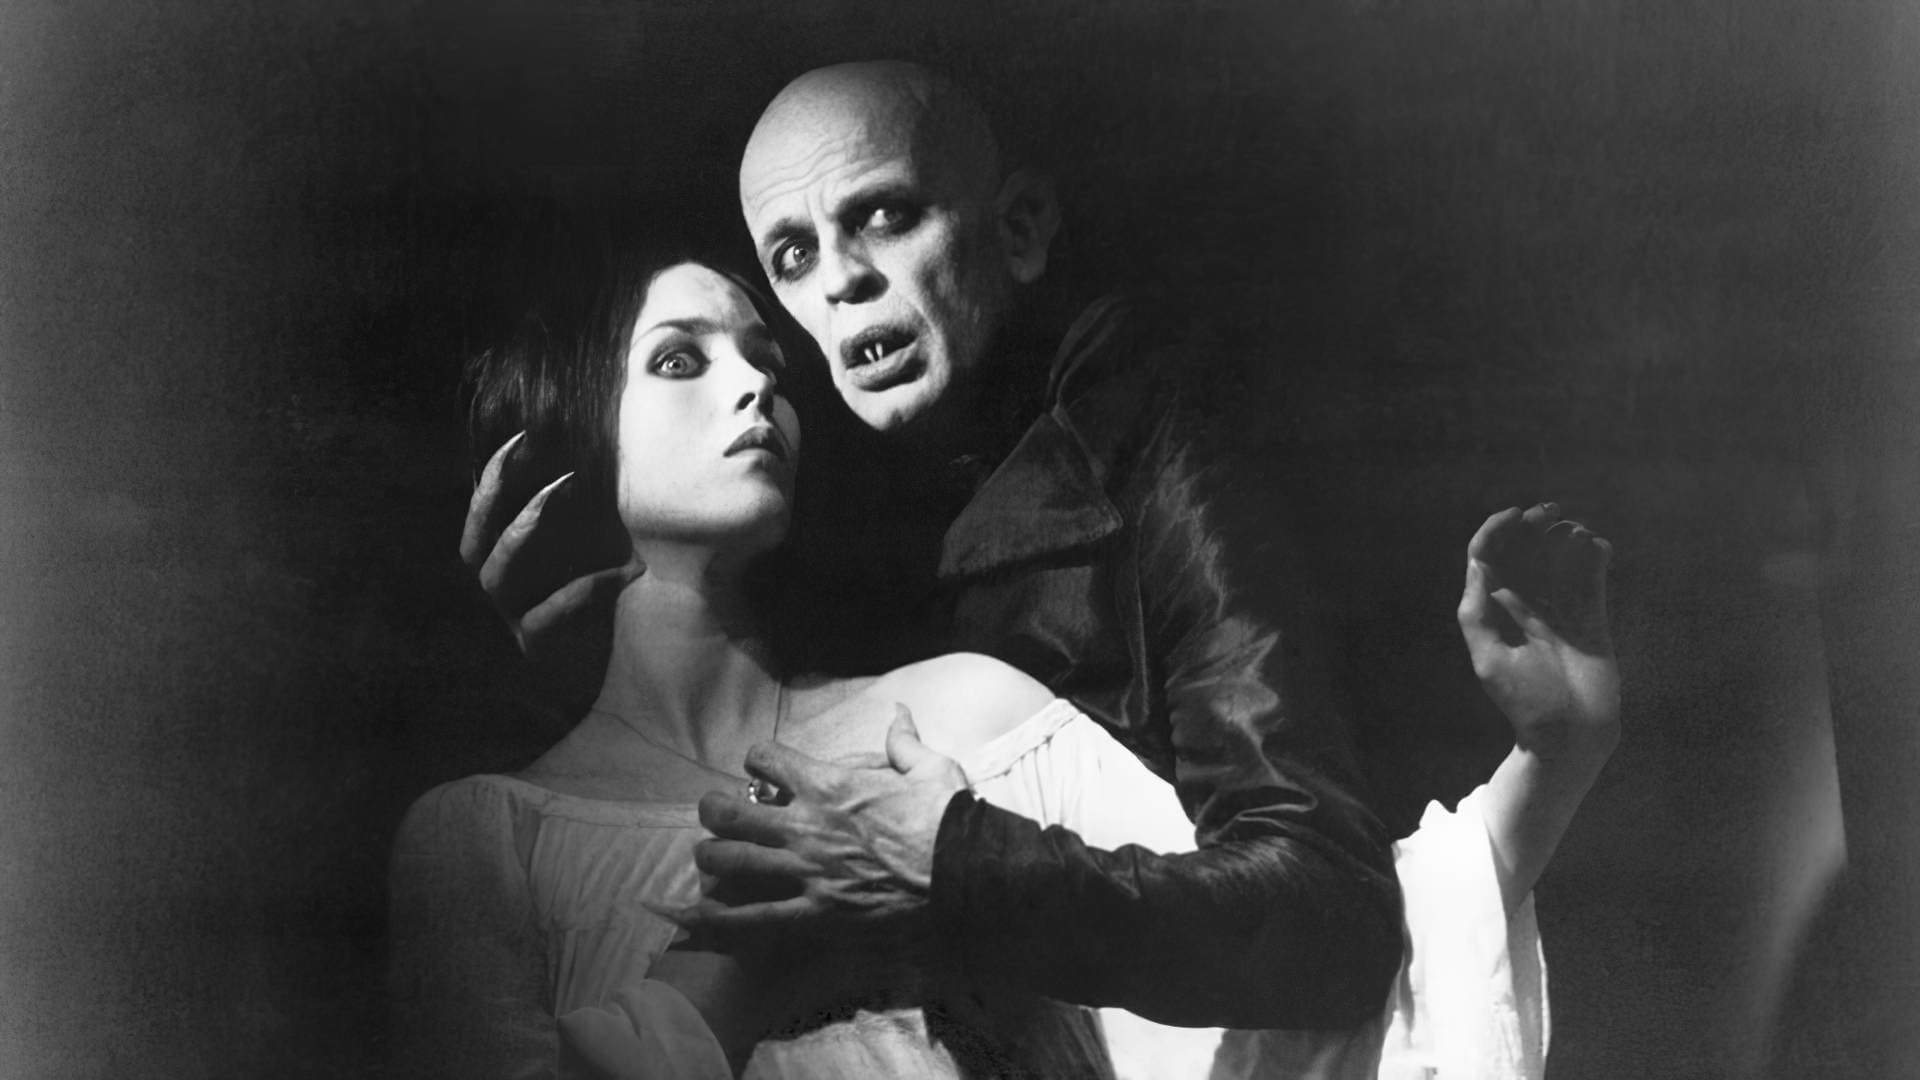 Nosferatu, az éjszaka fantomja (1979)